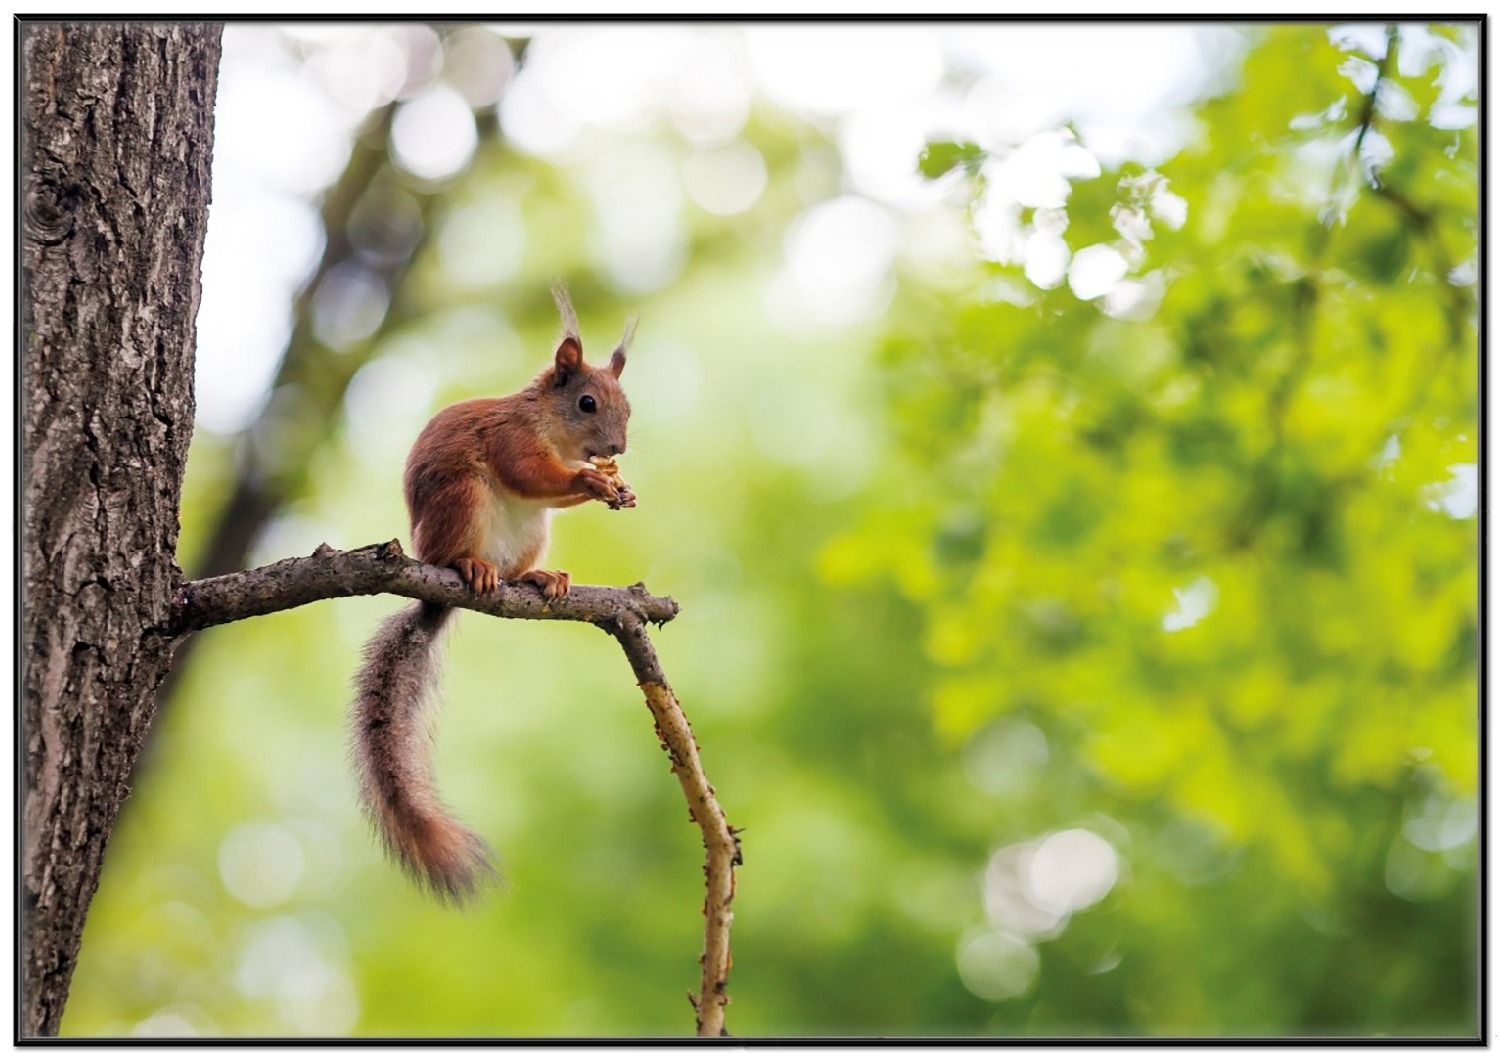  Eichhornchen Hintergrundbild 1500x1059. Paket Poster Eichhörnchen auf einem Ast